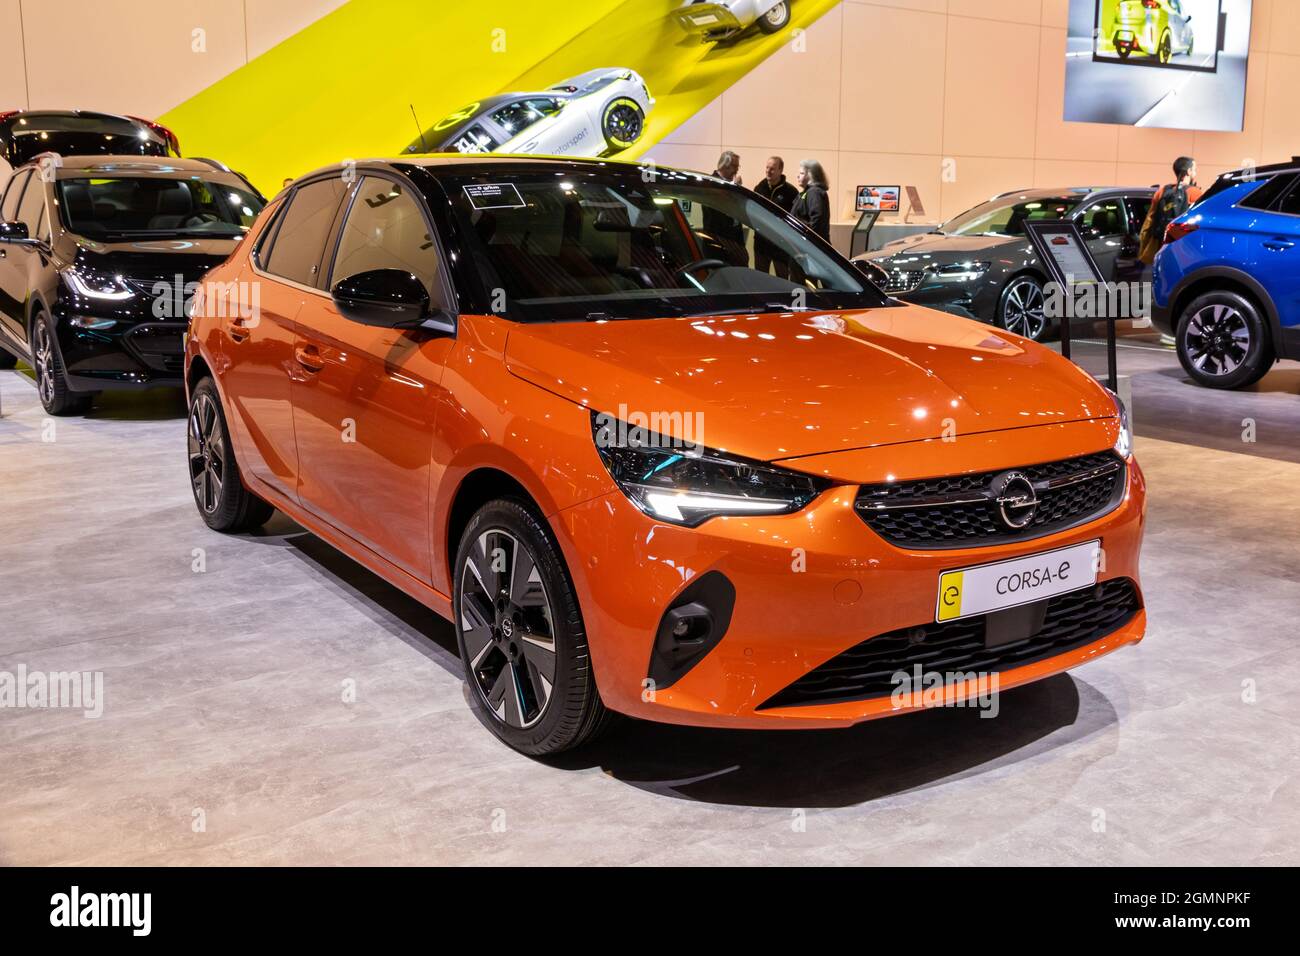 Opel Corsa-e nouveau modèle de voiture électrique présenté au salon automobile Autosalon 2020. Bruxelles, Belgique - 9 janvier 2020. Banque D'Images